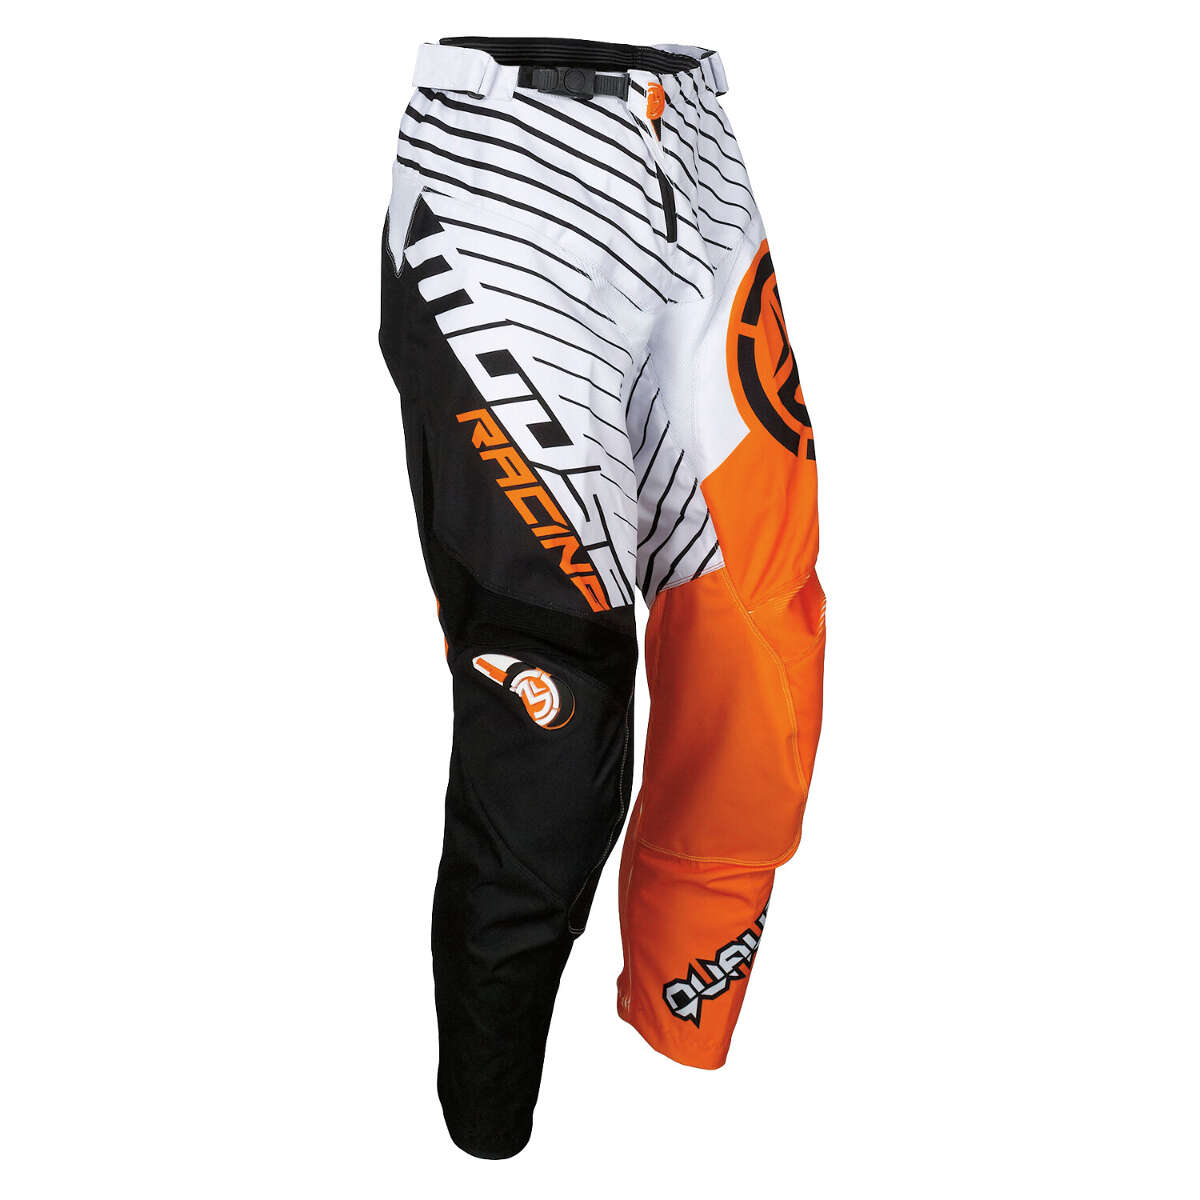 Moose Racing Pantalon MX Qualifier White/Black/Orange - Large Fit